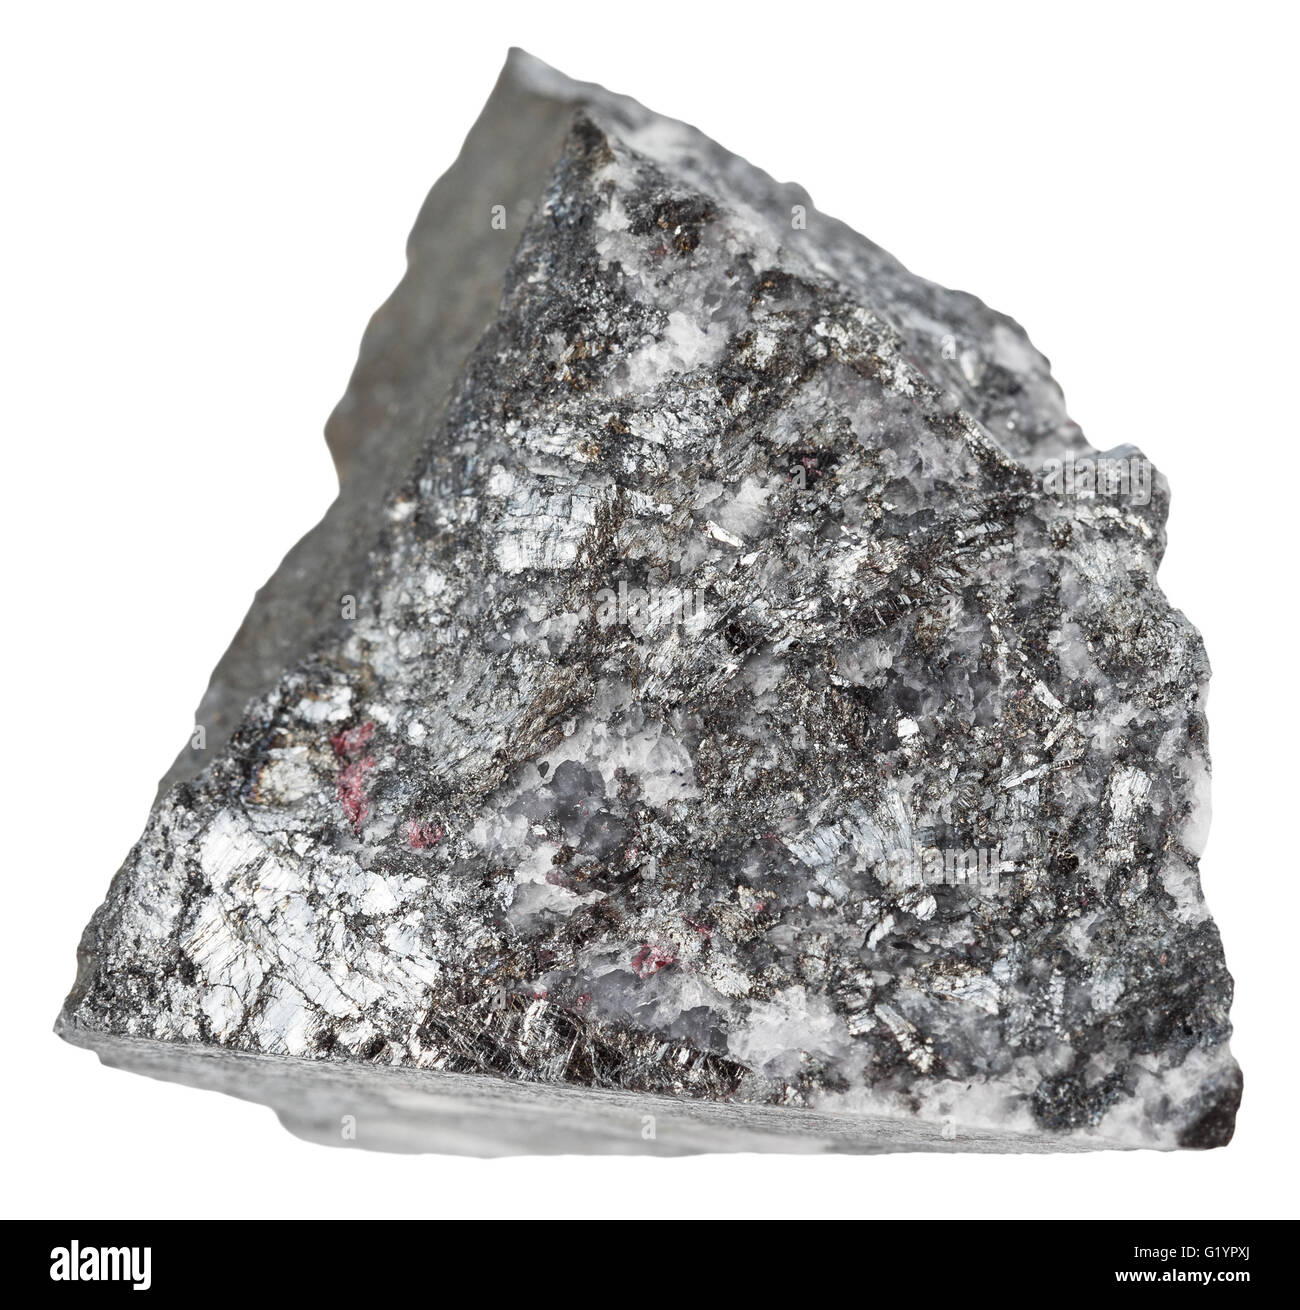 Le riprese in modalità macro di minerali naturali di pietra - campione di stibnite (antimonite, minerale di antimonio) isolato su sfondo bianco Foto Stock